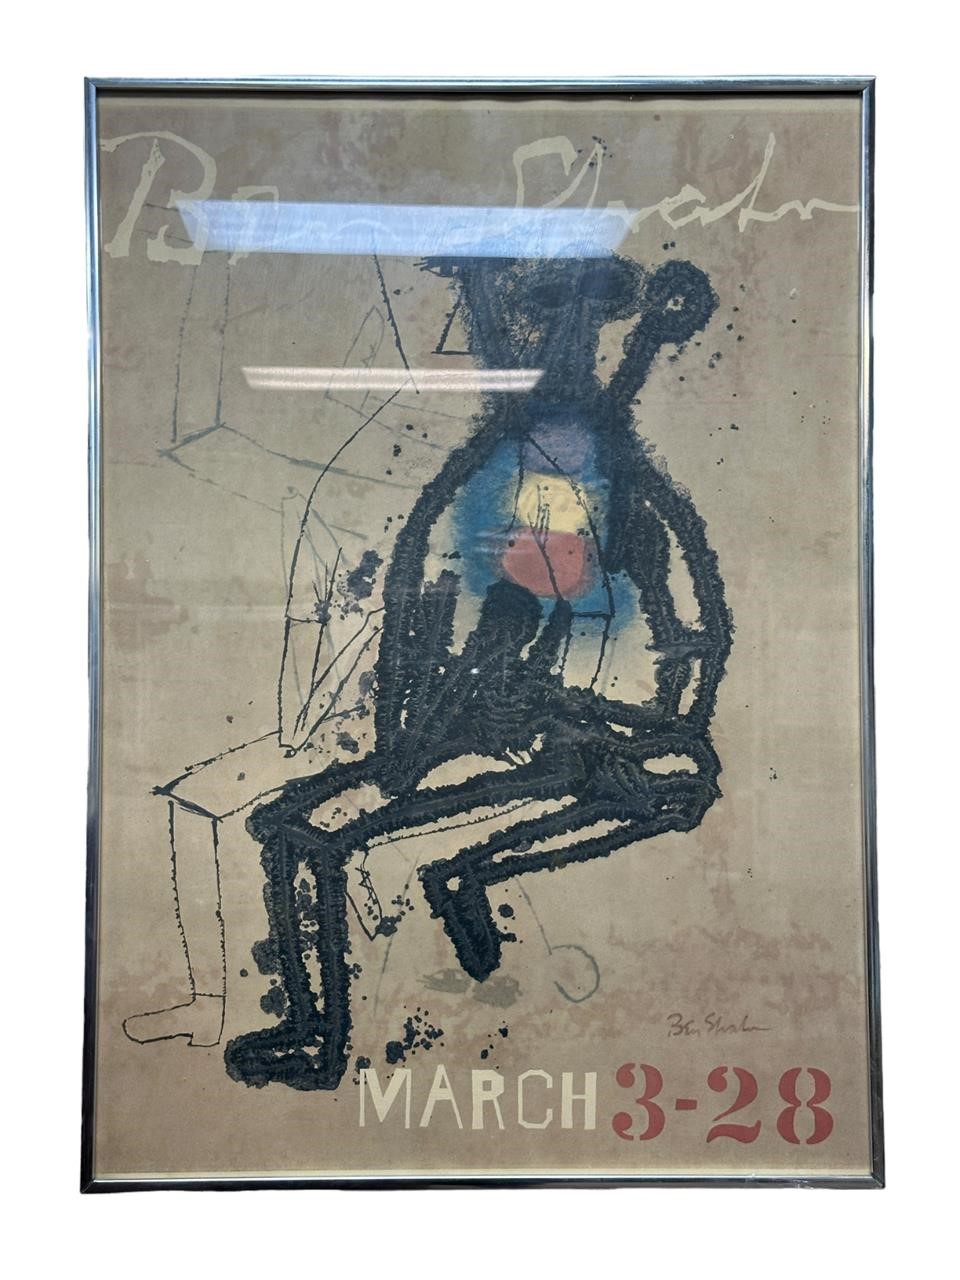 1960's Ben Shahn Lithograph Exhibition Poster